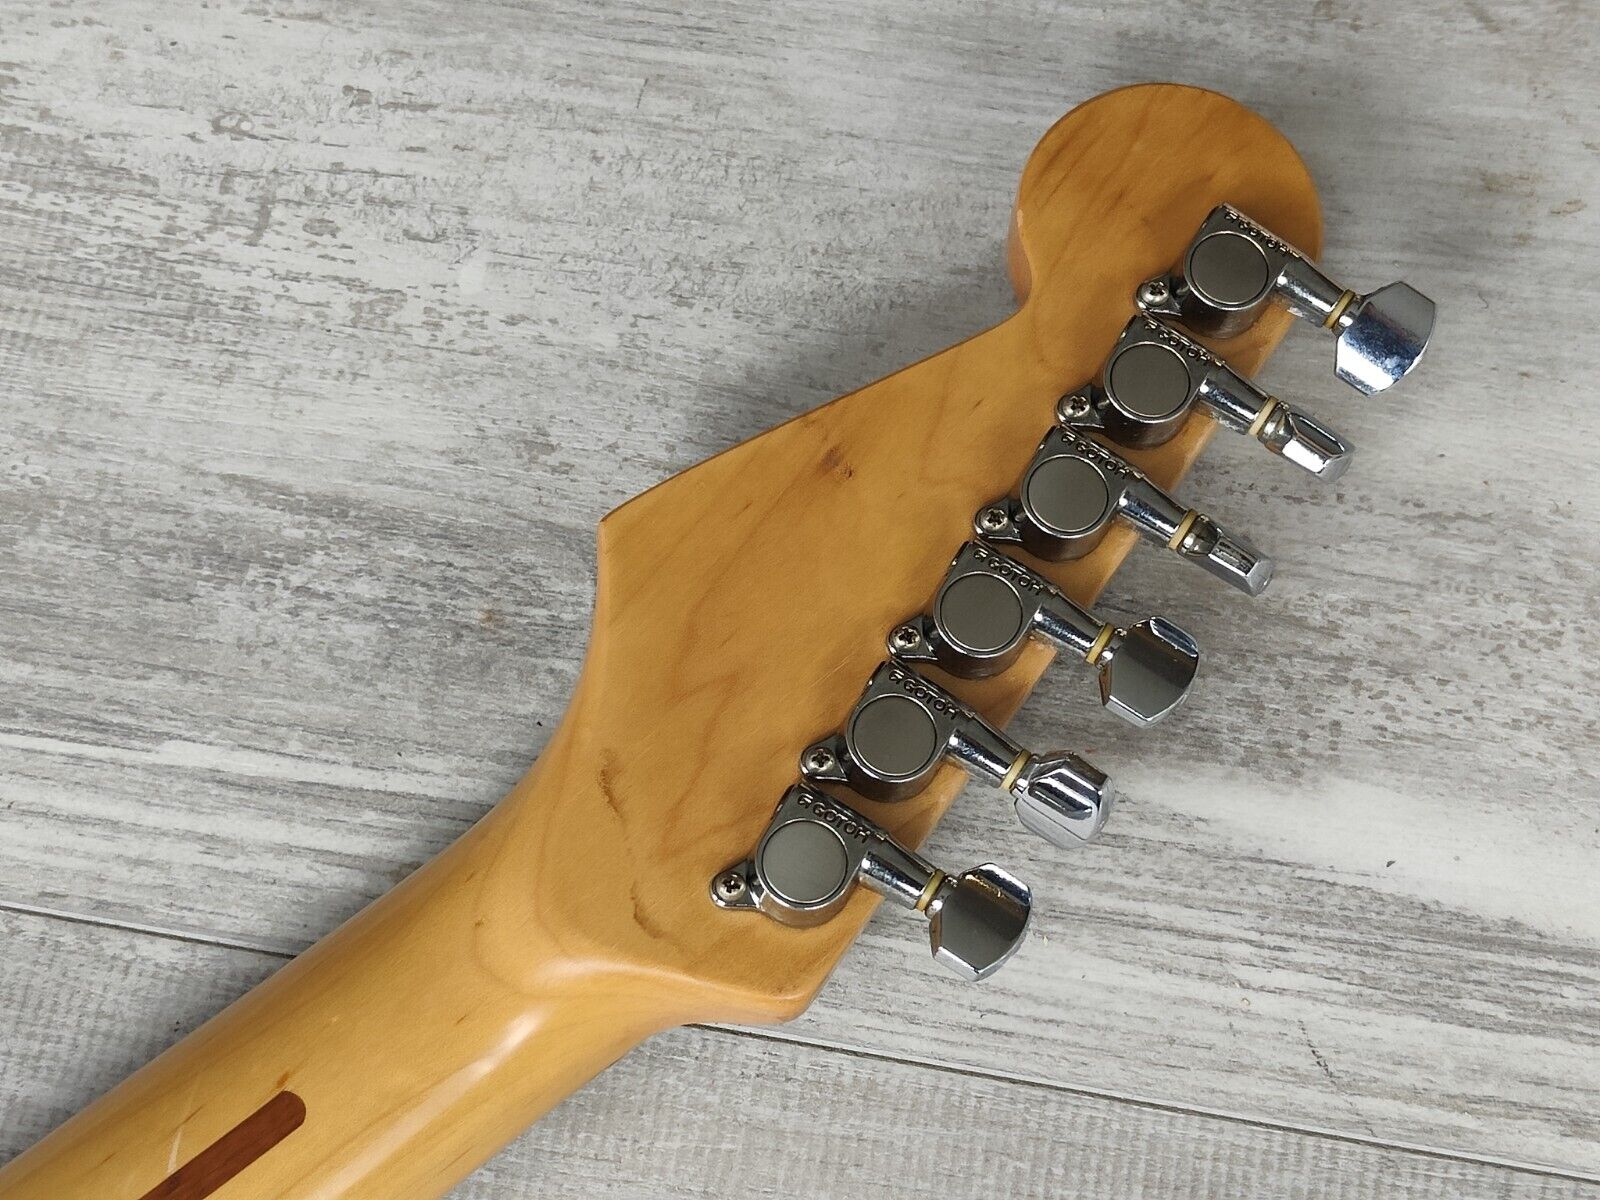 1993 Fender Japan Stratocaster Standard (Black/Maple)